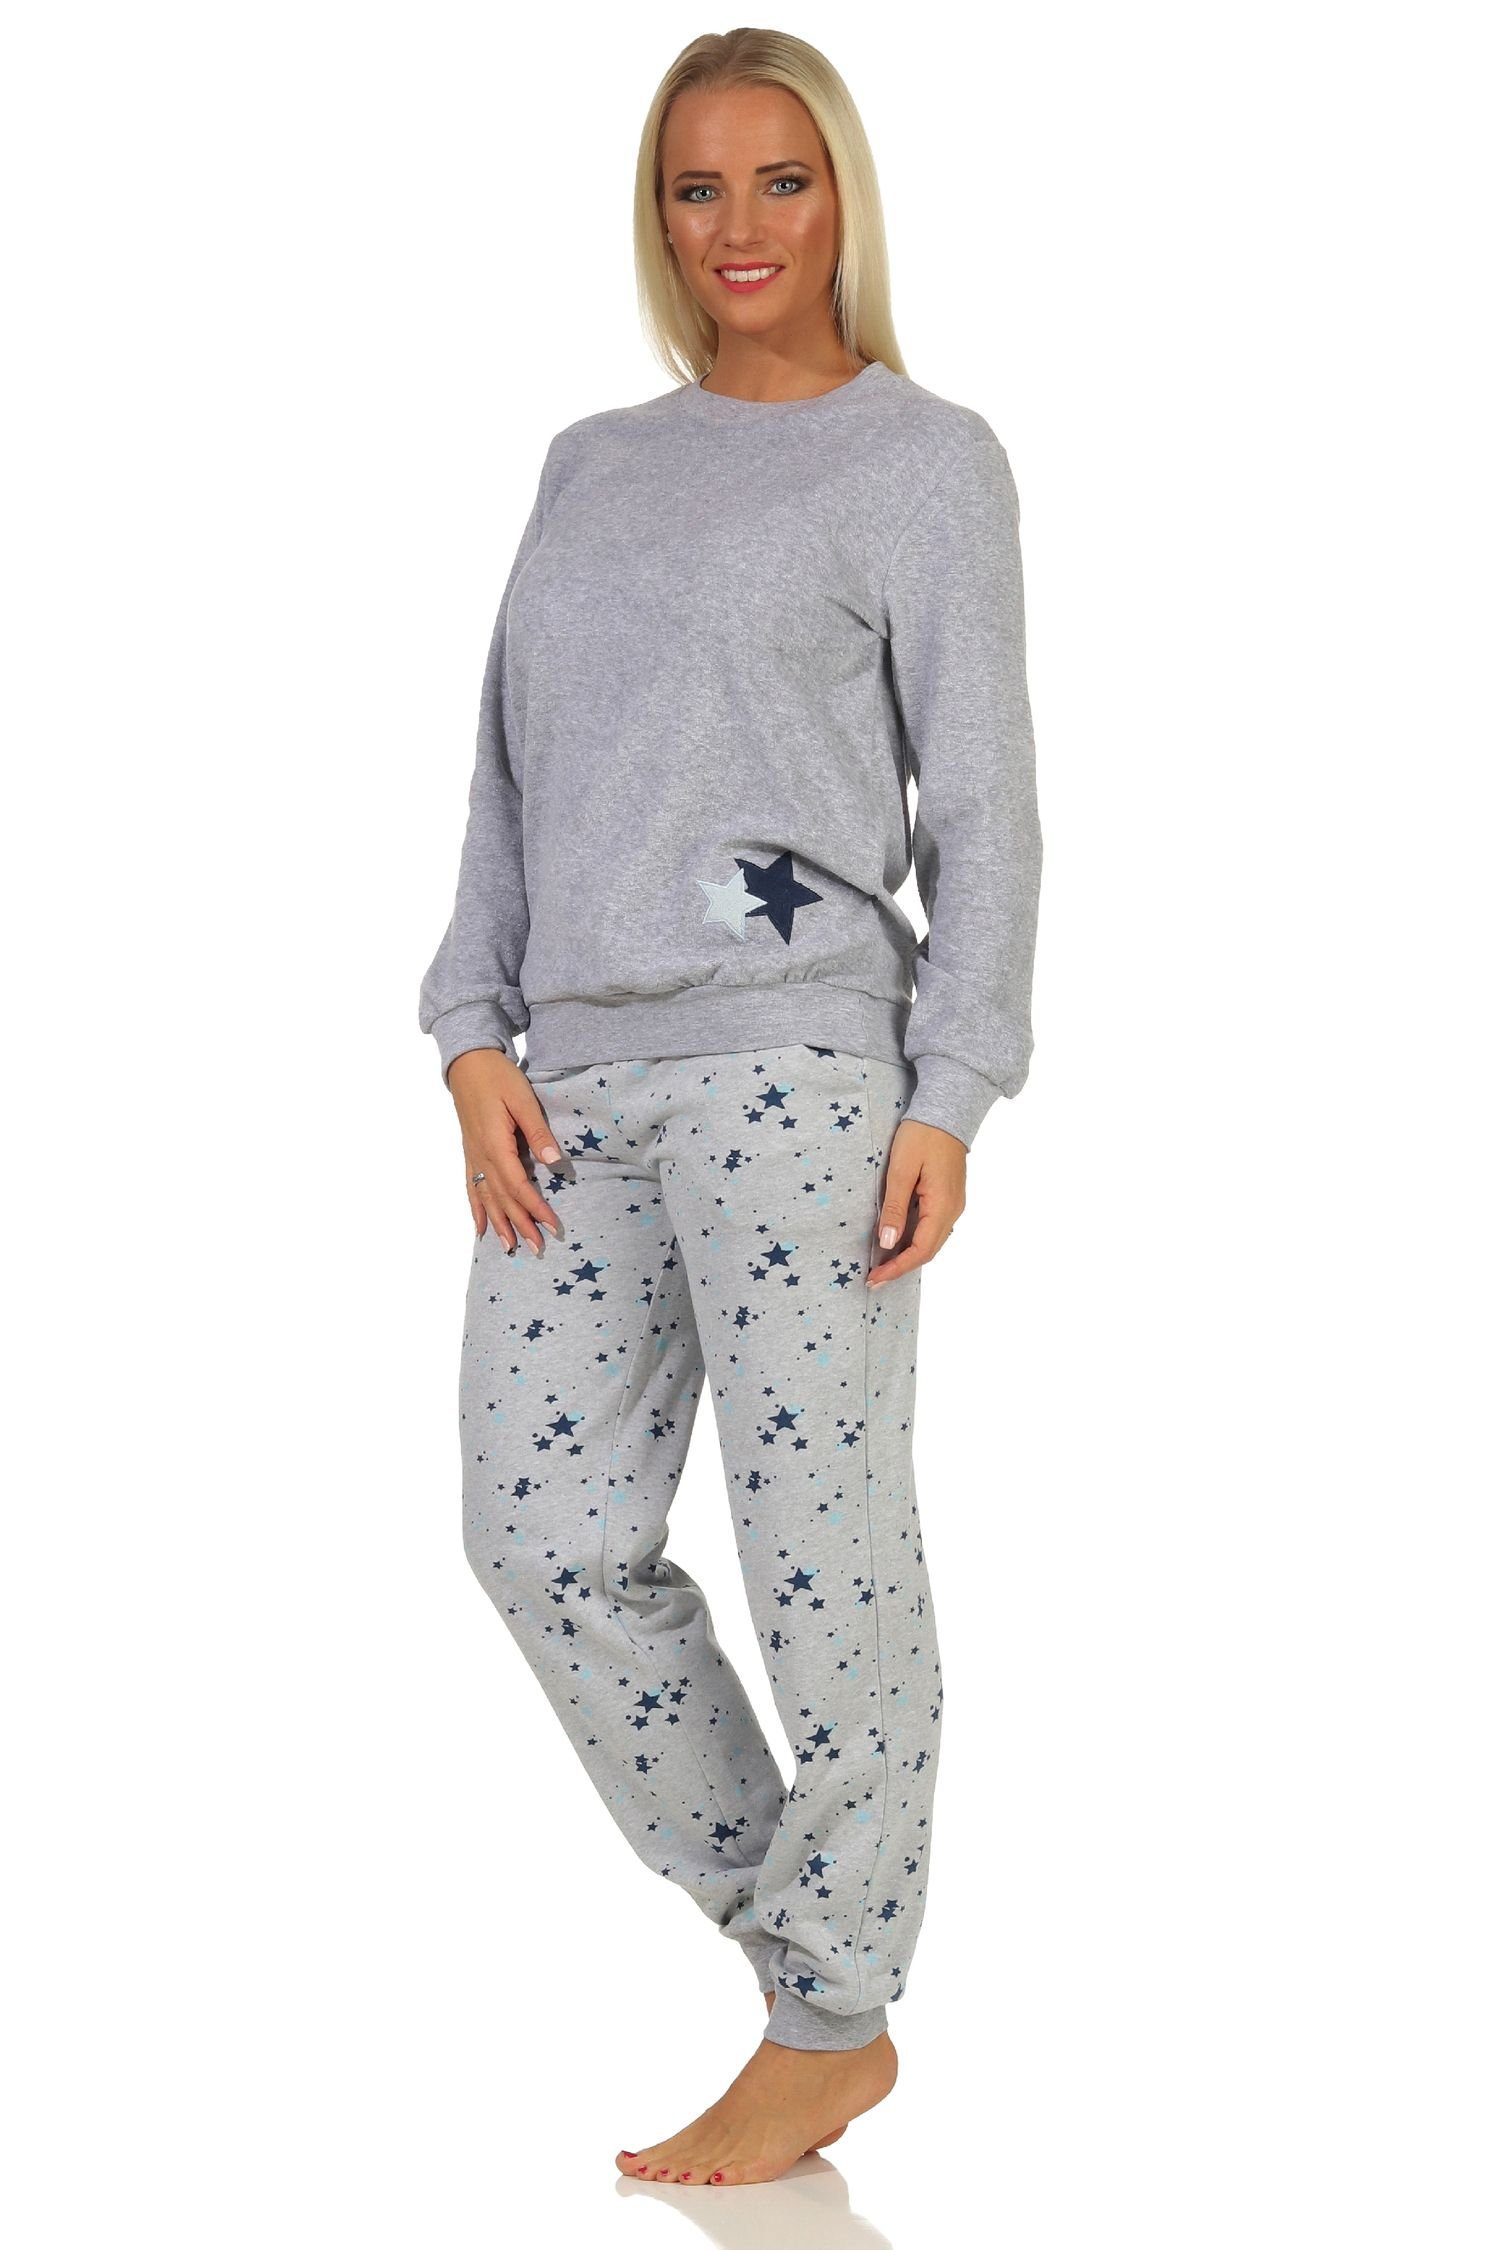 Frottee grau-melange -auch Sterne Motiv mit Übergröße Bündchen Damen Normann Pyjama als in Pyjama